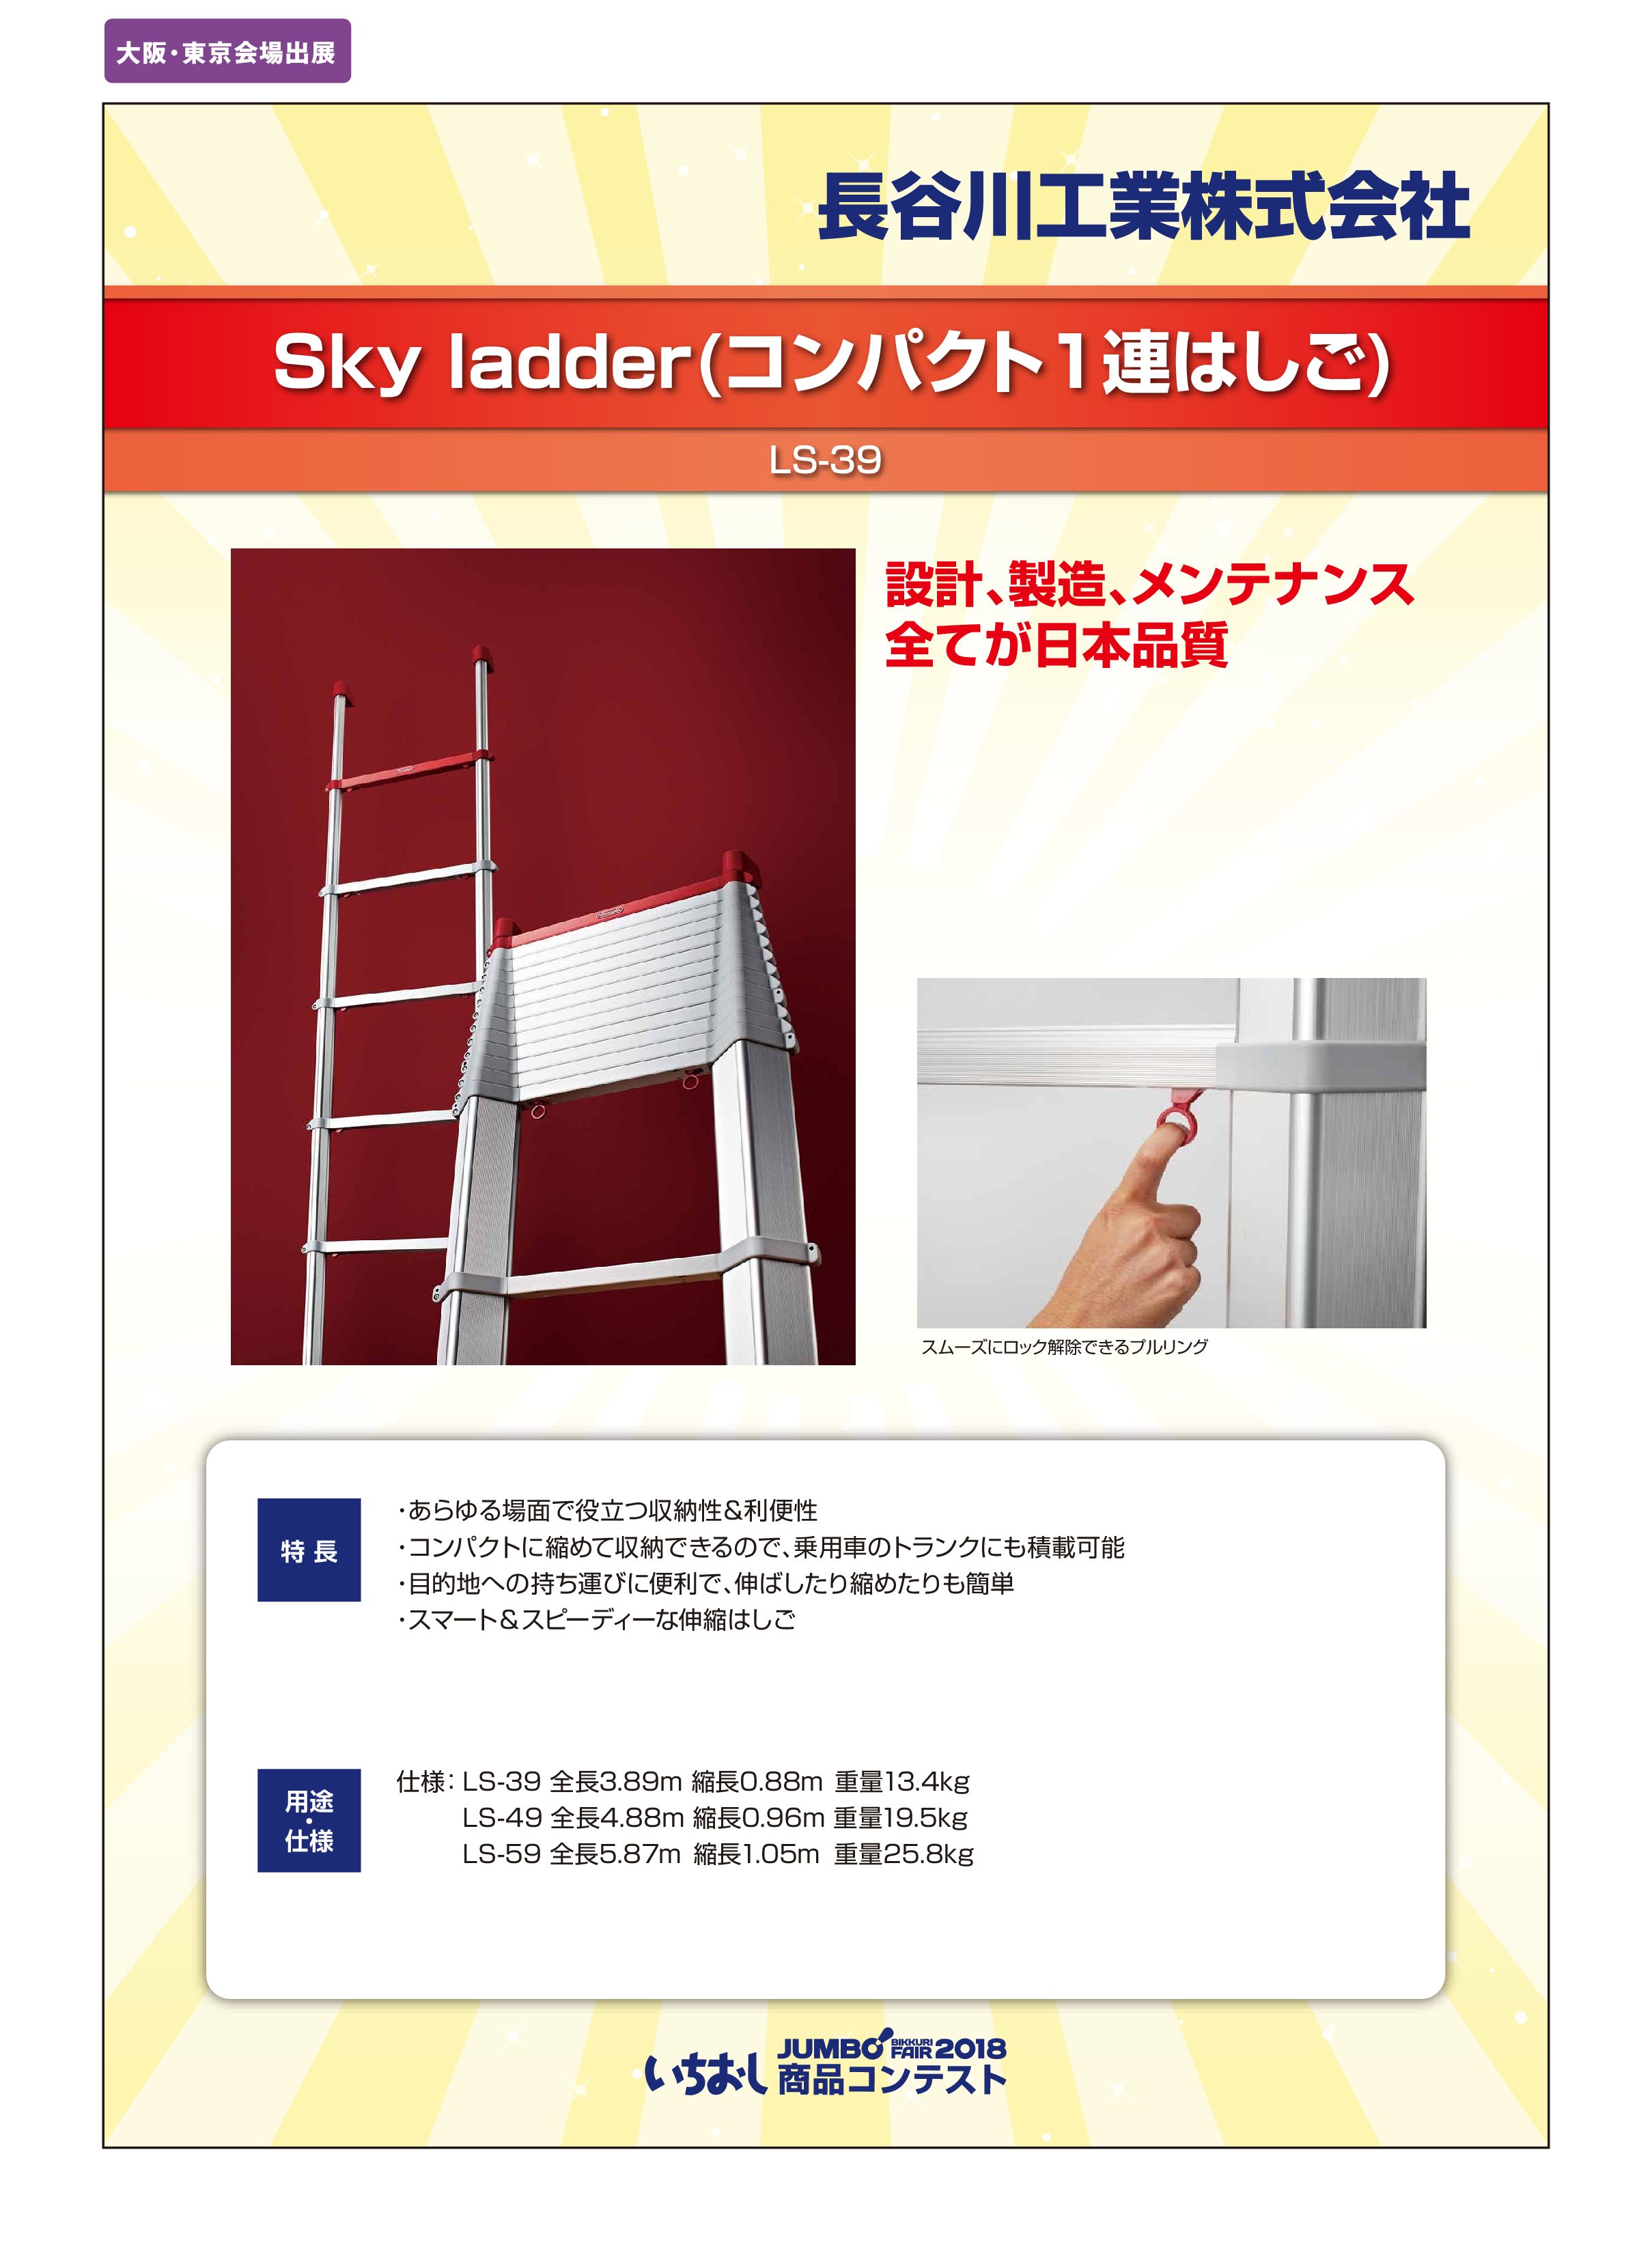 「Sky ladder(コンパクト1連はしご)」長谷川工業株式会社の画像